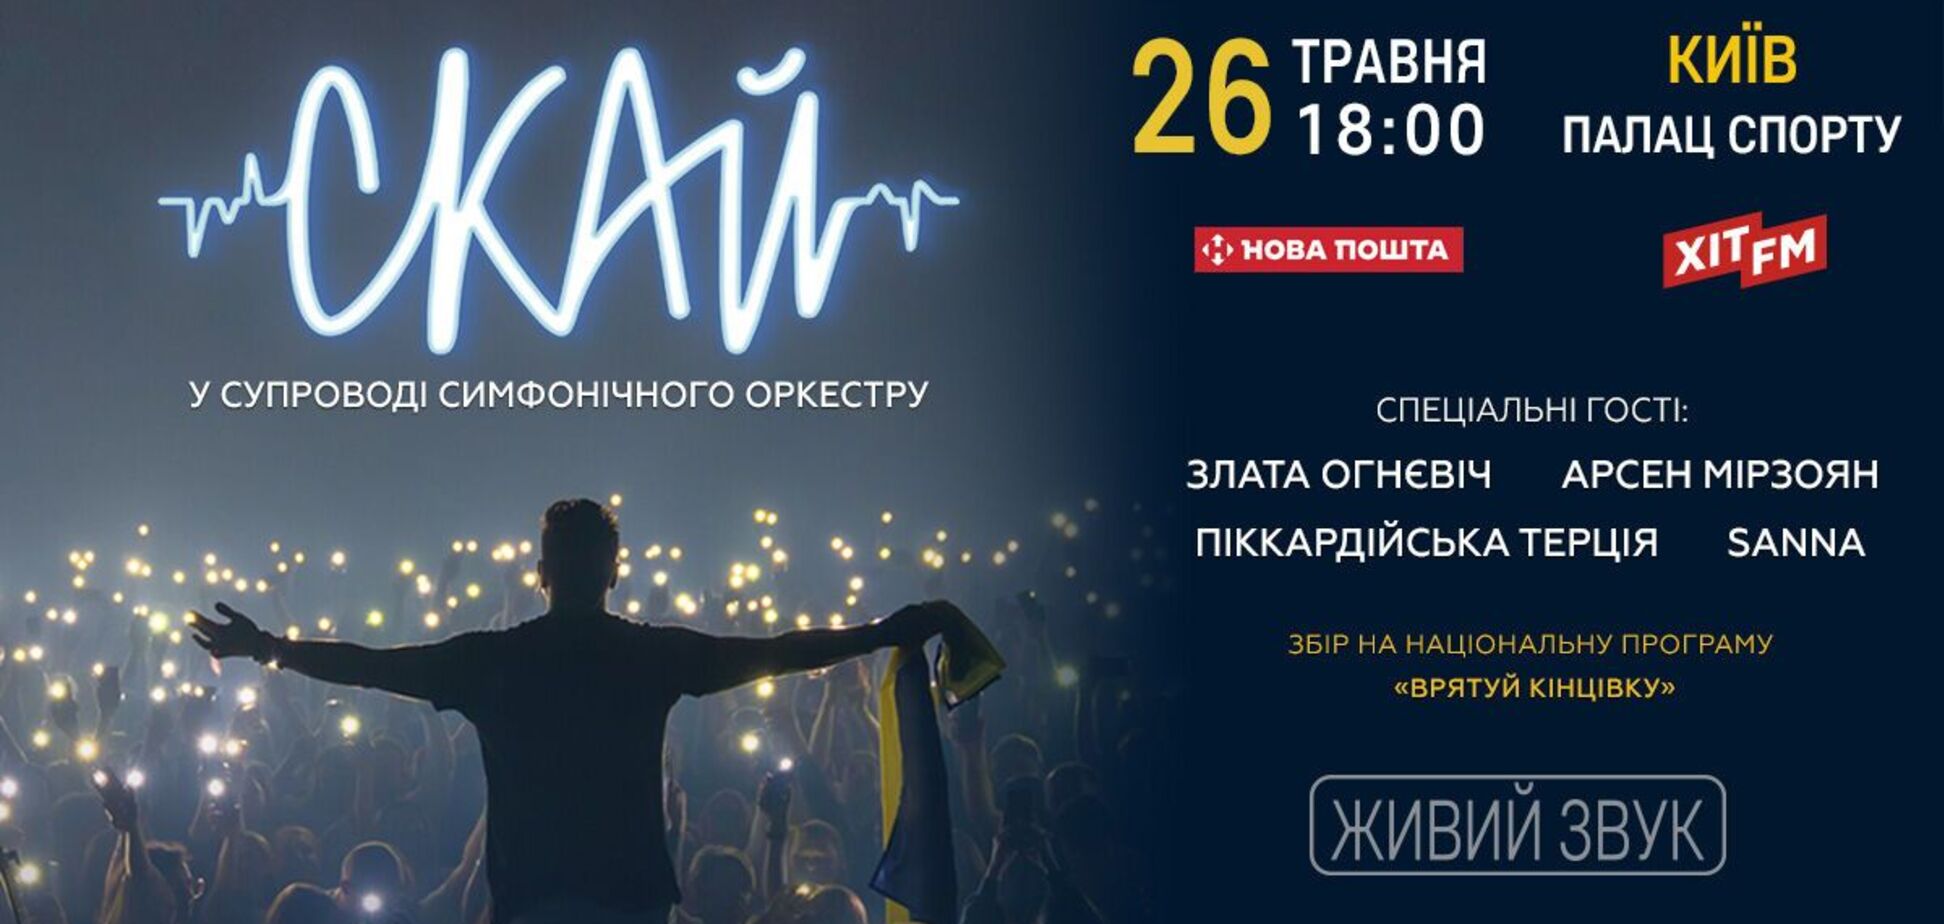 Группа 'СКАЙ' ко Дню Киева даст первый большой концерт во Дворце Спорта